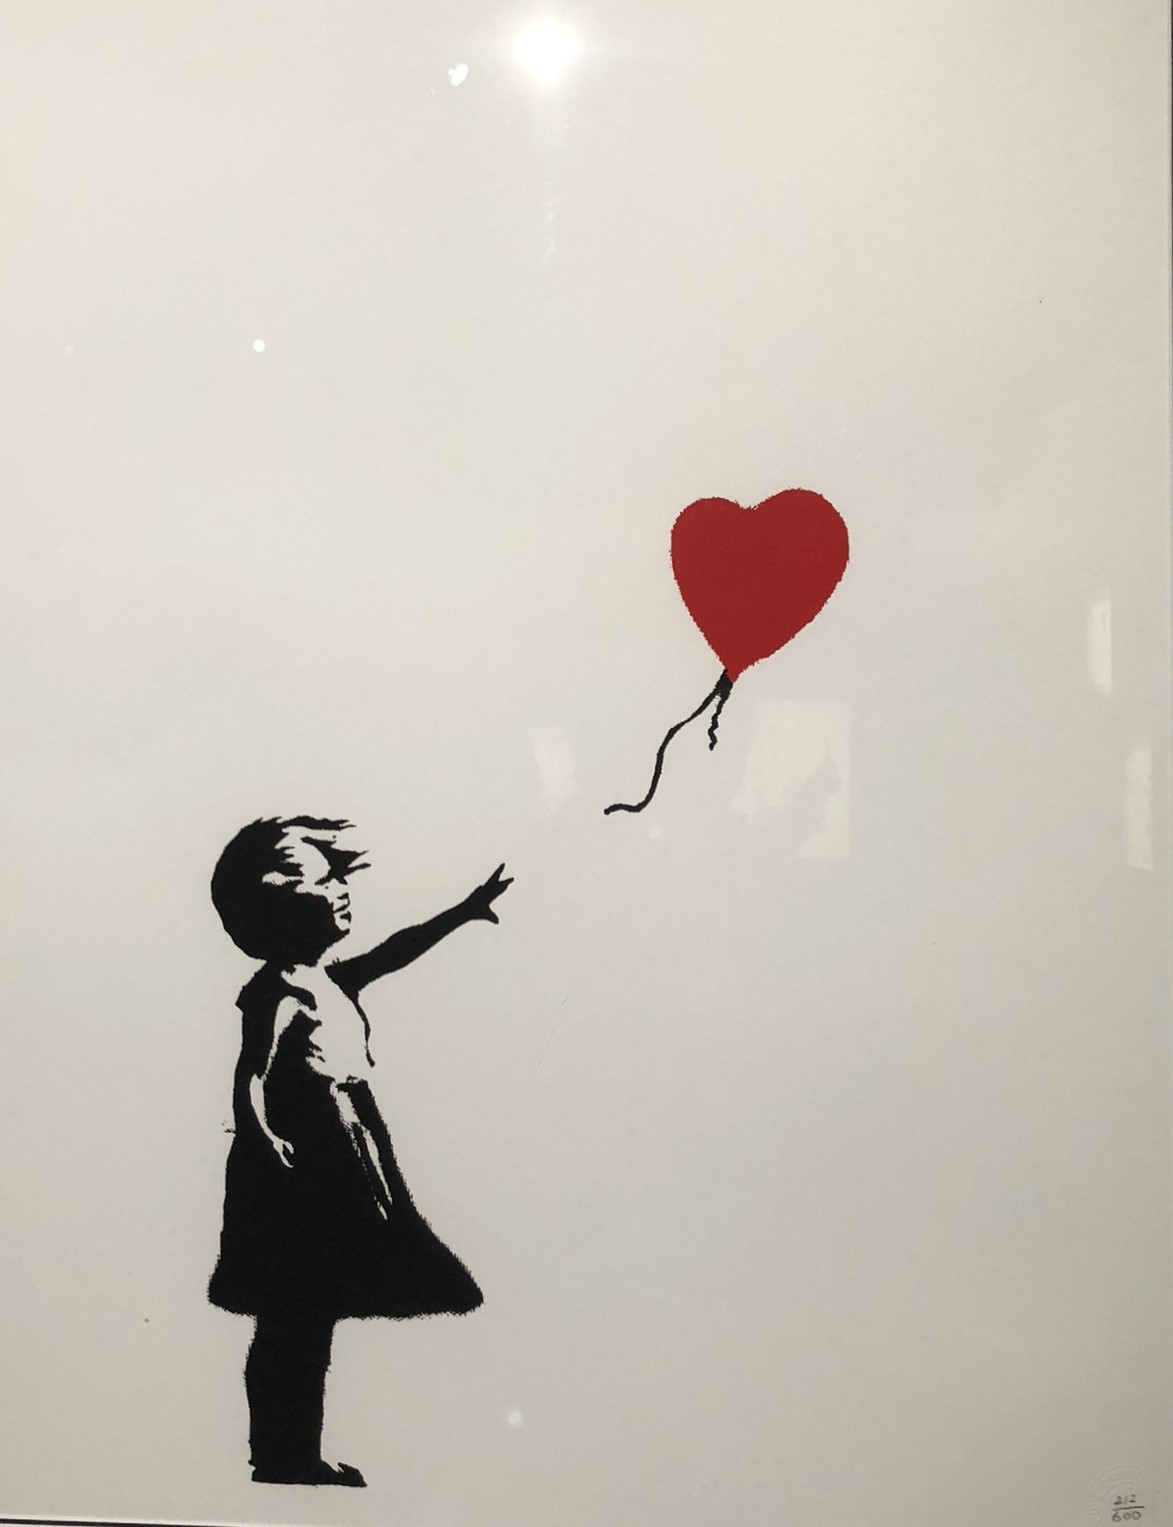 Balloon Girl - Mädchen, das einen roten Ballon in Herzform davonfliegen lässt, Schablonengraffiti von Banksy